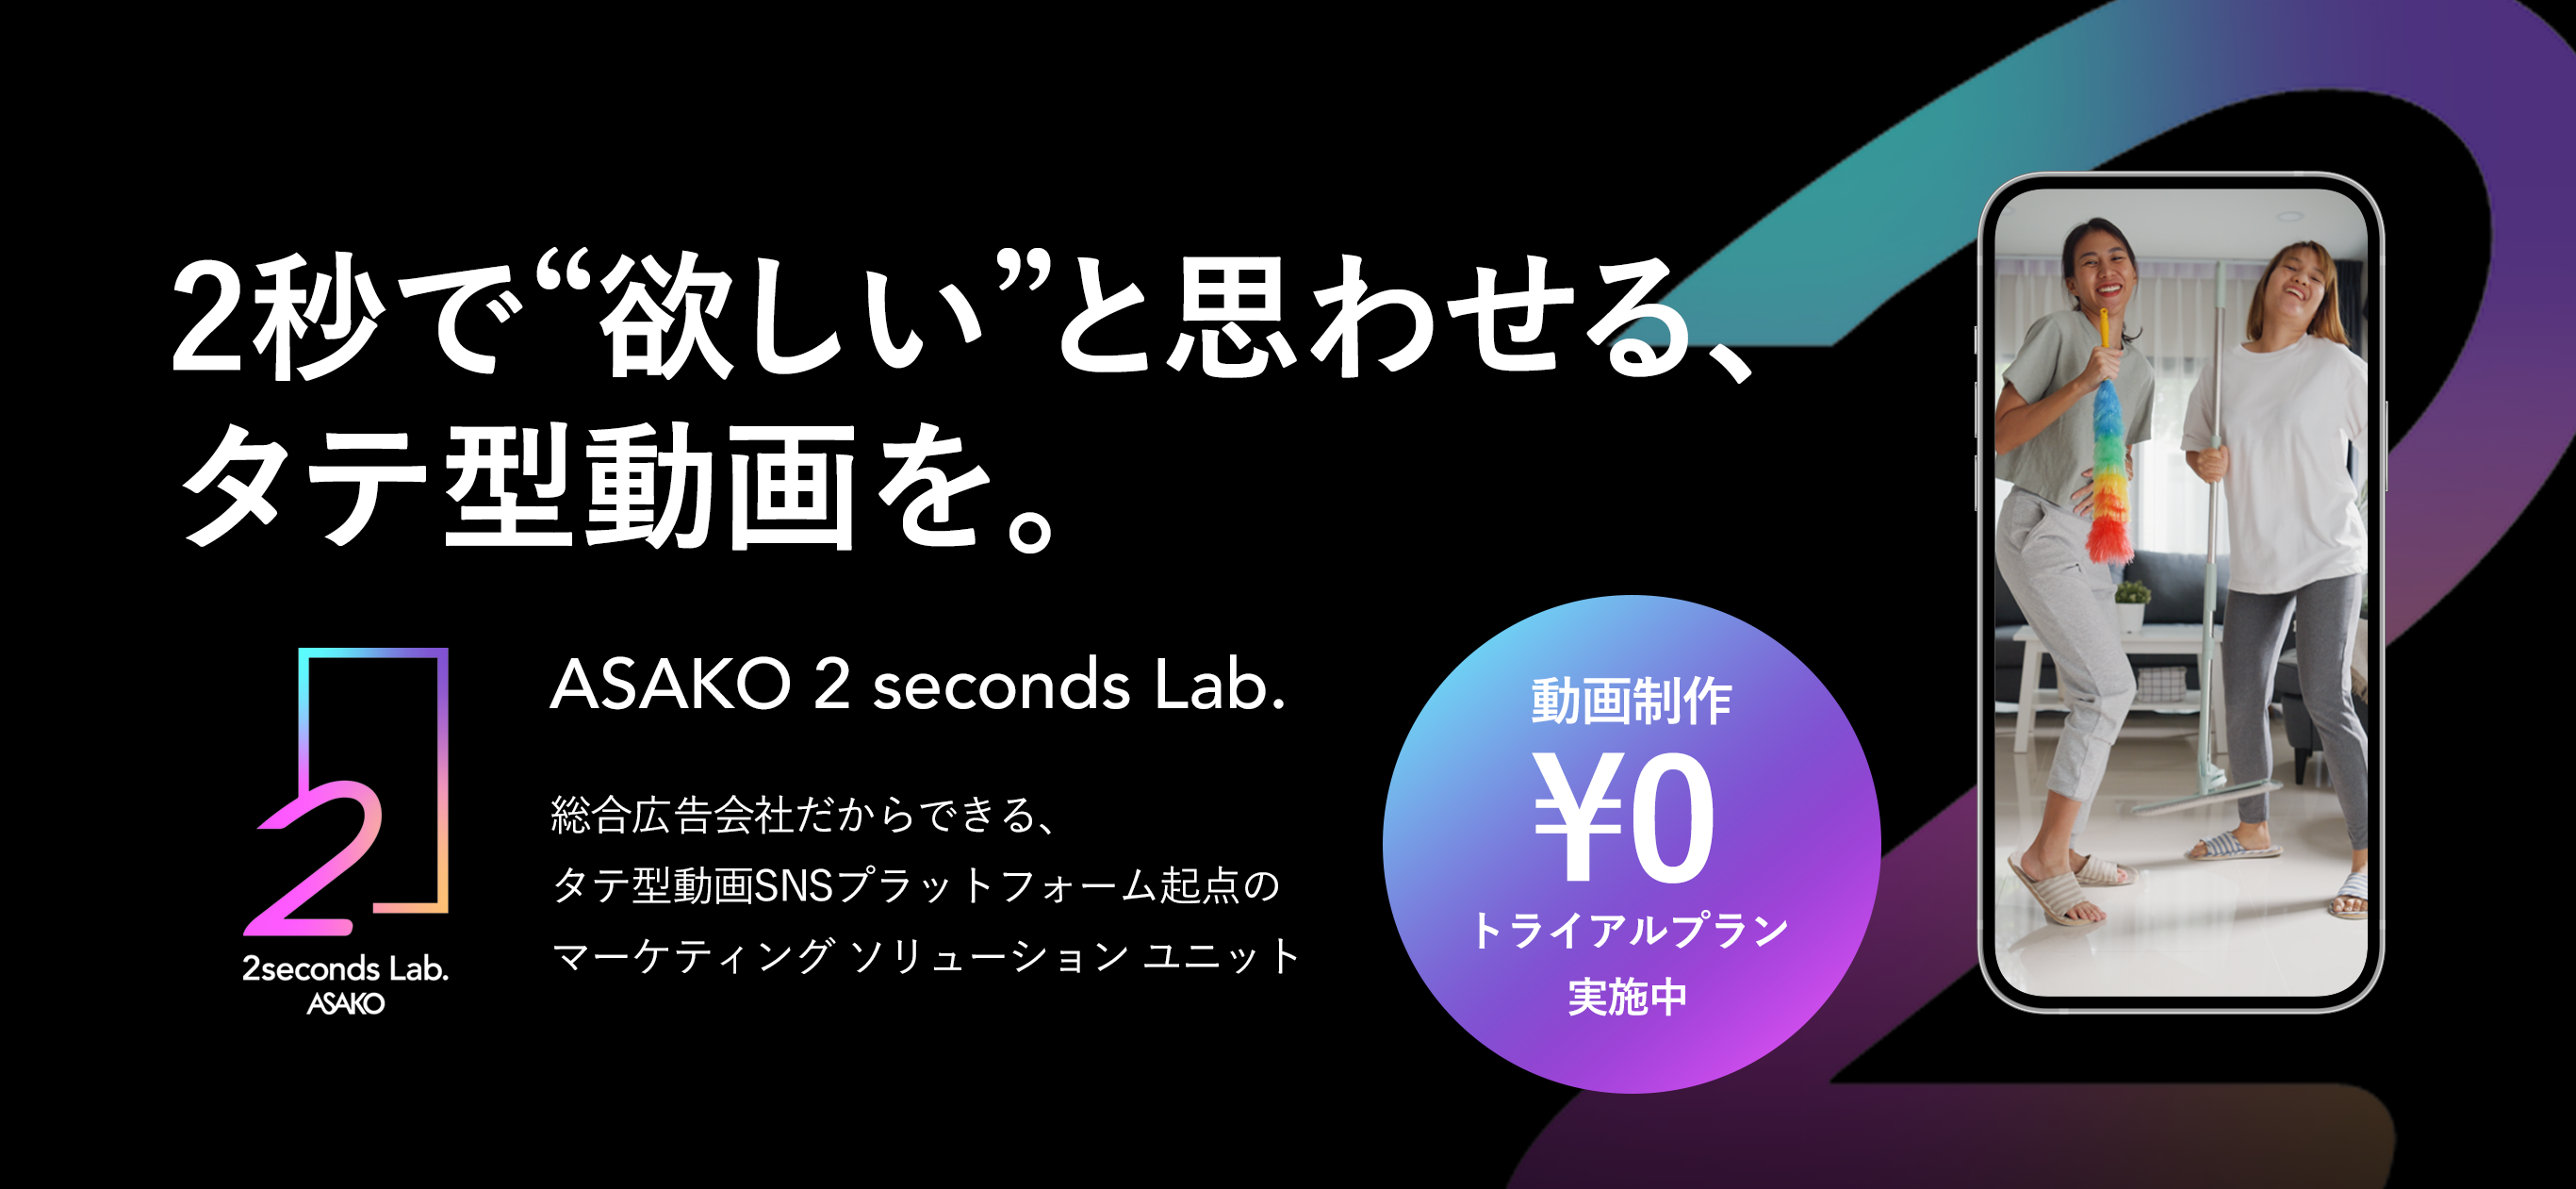 >2秒で“欲しい”と思わせる、タテ型動画を。 ASAKO 2 seconds Lab.